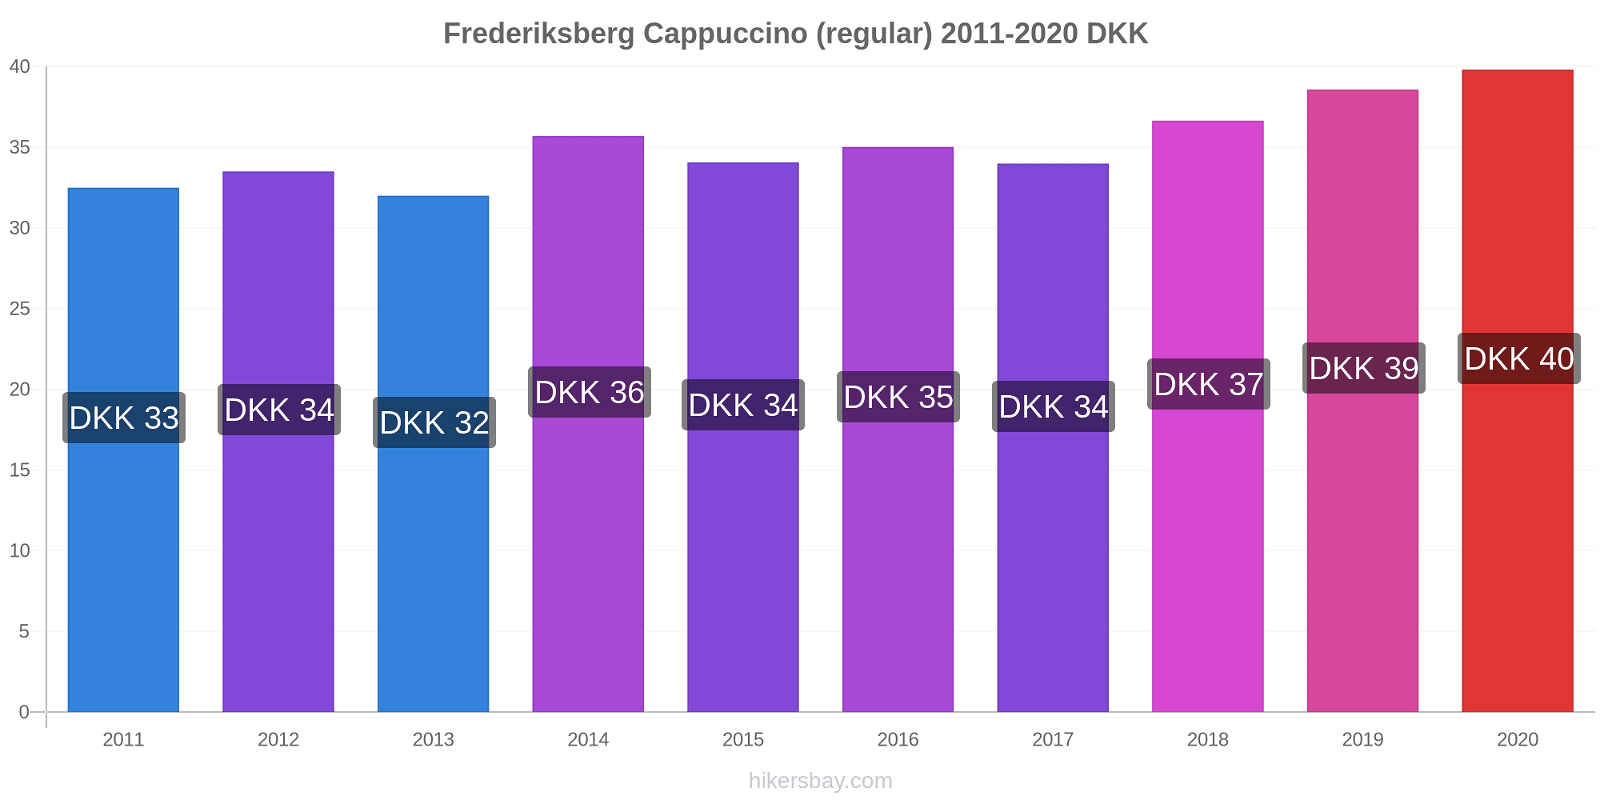 Frederiksberg variação de preço Capuccino (regular) hikersbay.com